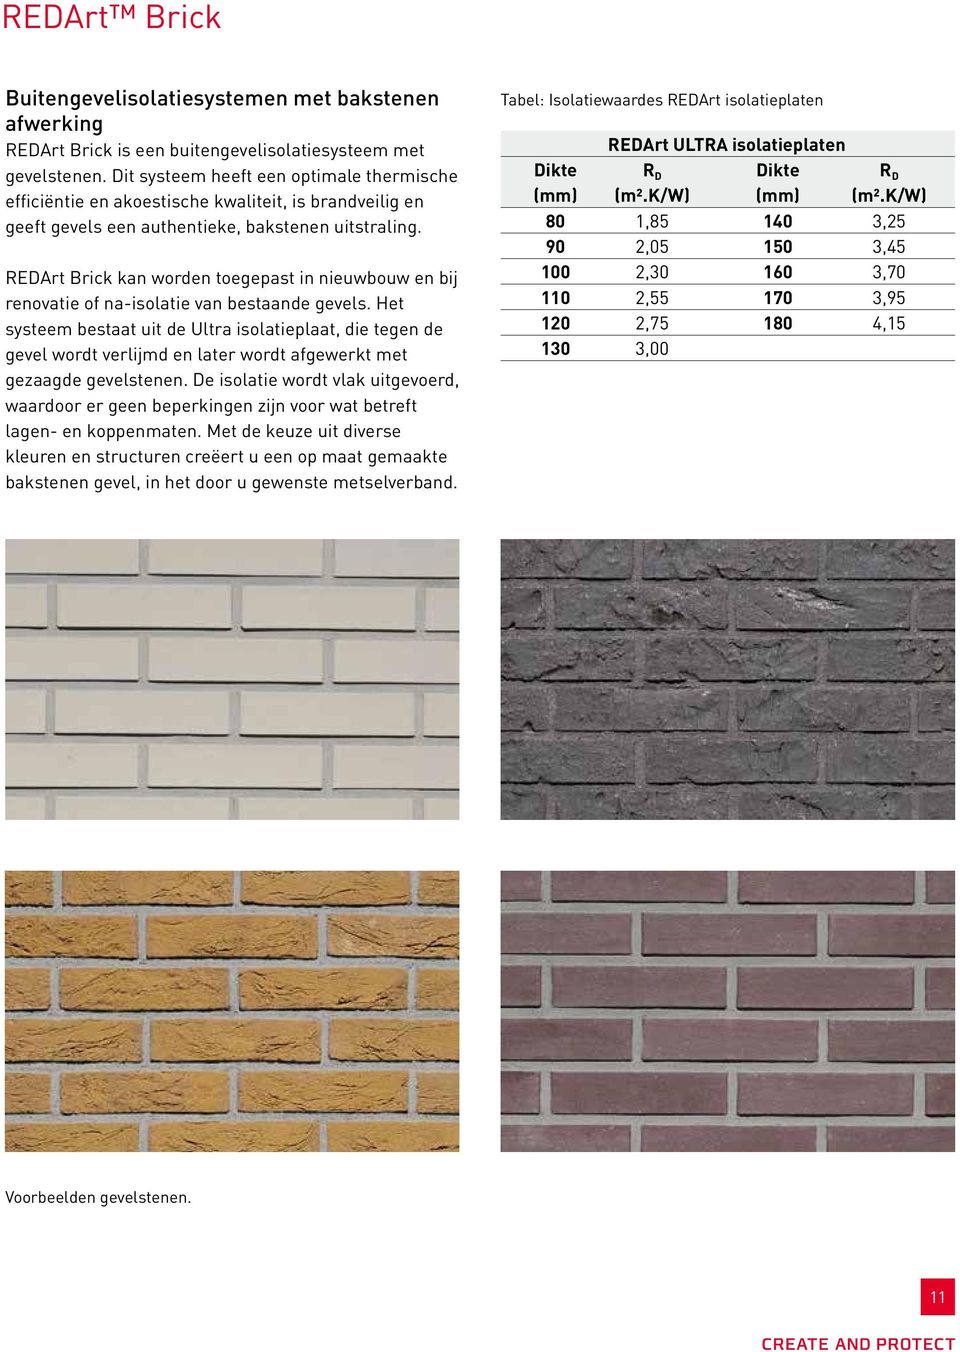 REDArt Brick kan worden toegepast in nieuwbouw en bij renovatie of na-isolatie van bestaande gevels.